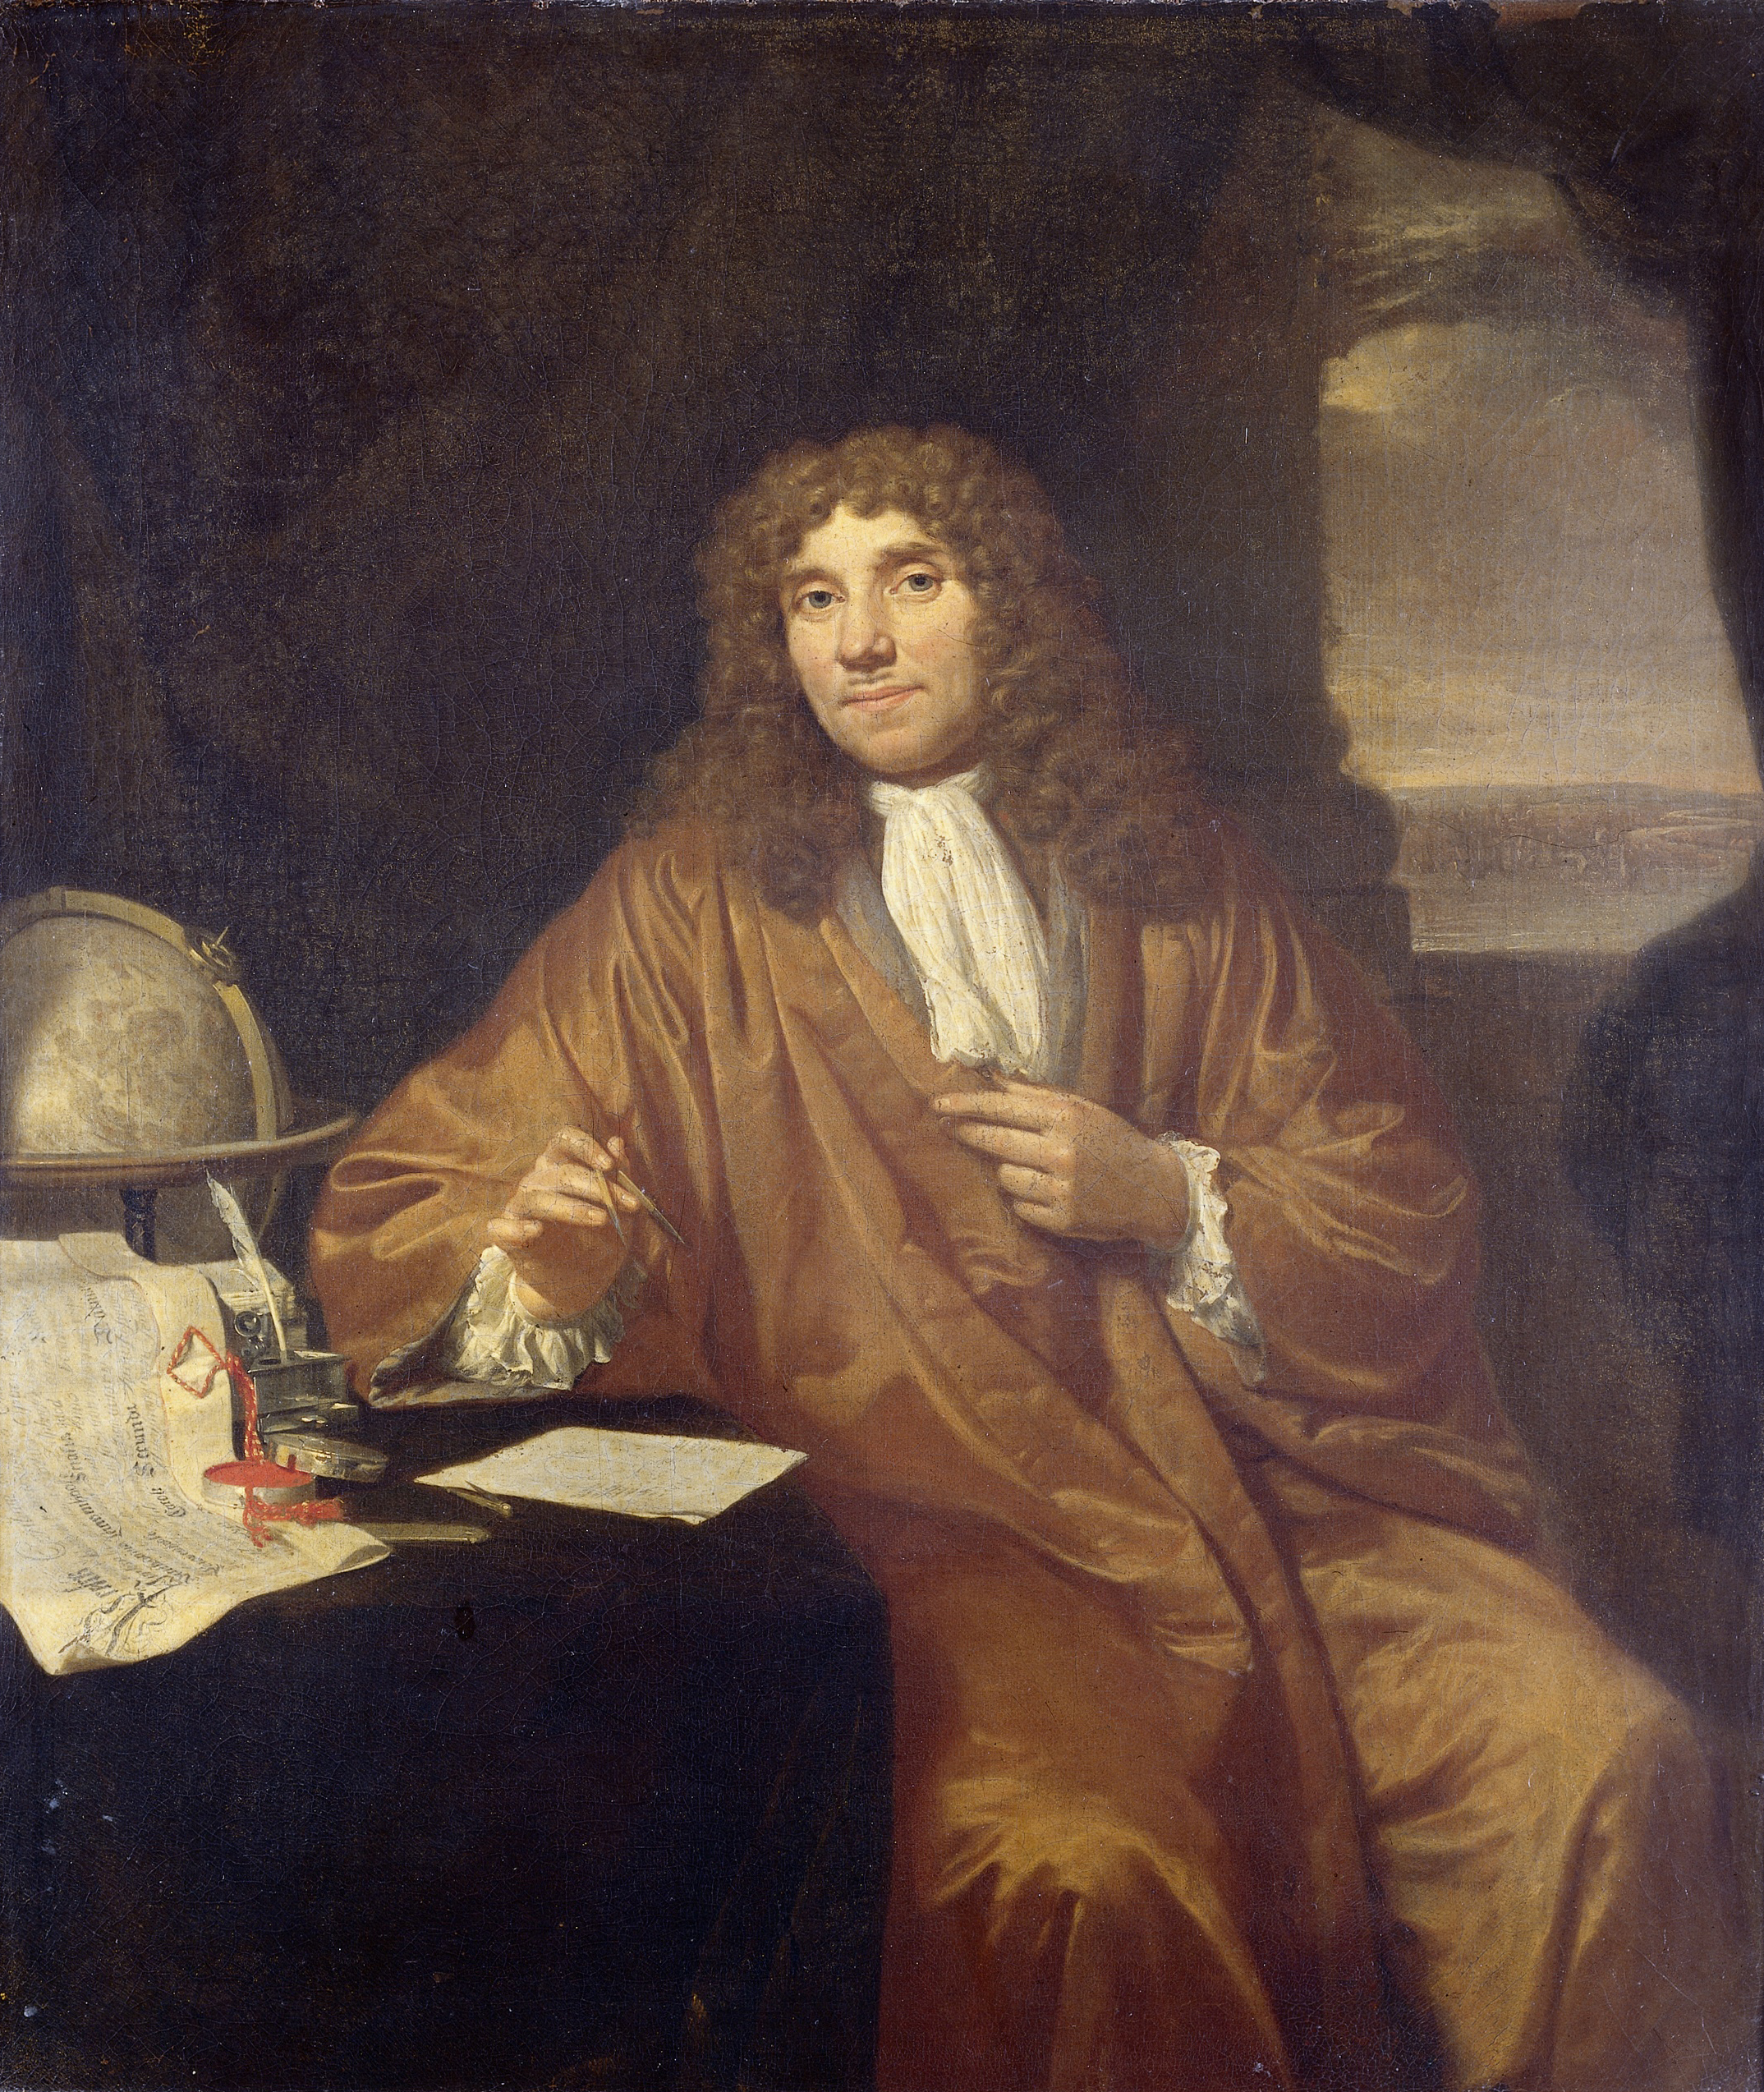 A portrait of Antonie van Leeuwenhoek (1632 - 1723)